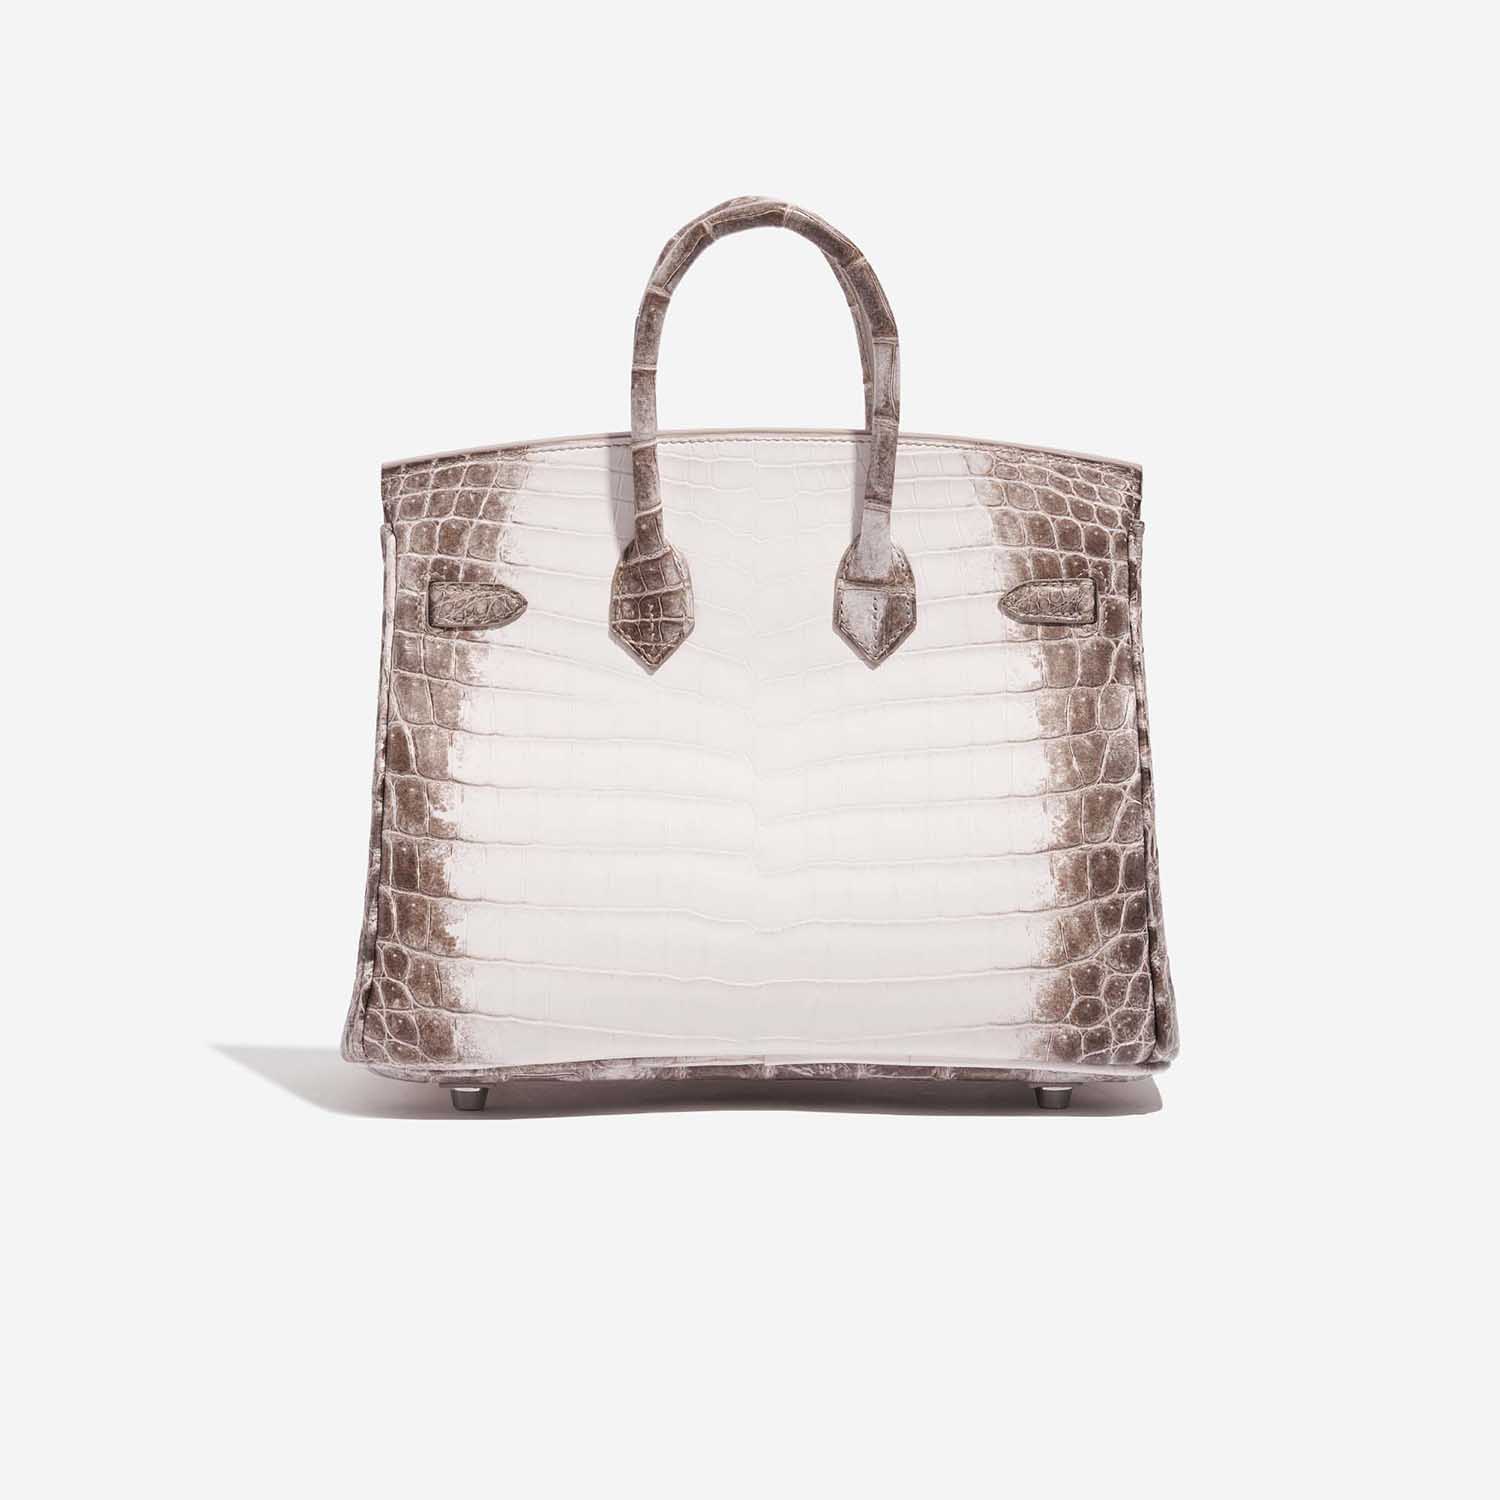 Pre-owned Hermès Tasche Birkin 25 Niloticus Crocodile Himalaya Blanc Brown, White Back | Verkaufen Sie Ihre Designer-Tasche auf Saclab.com